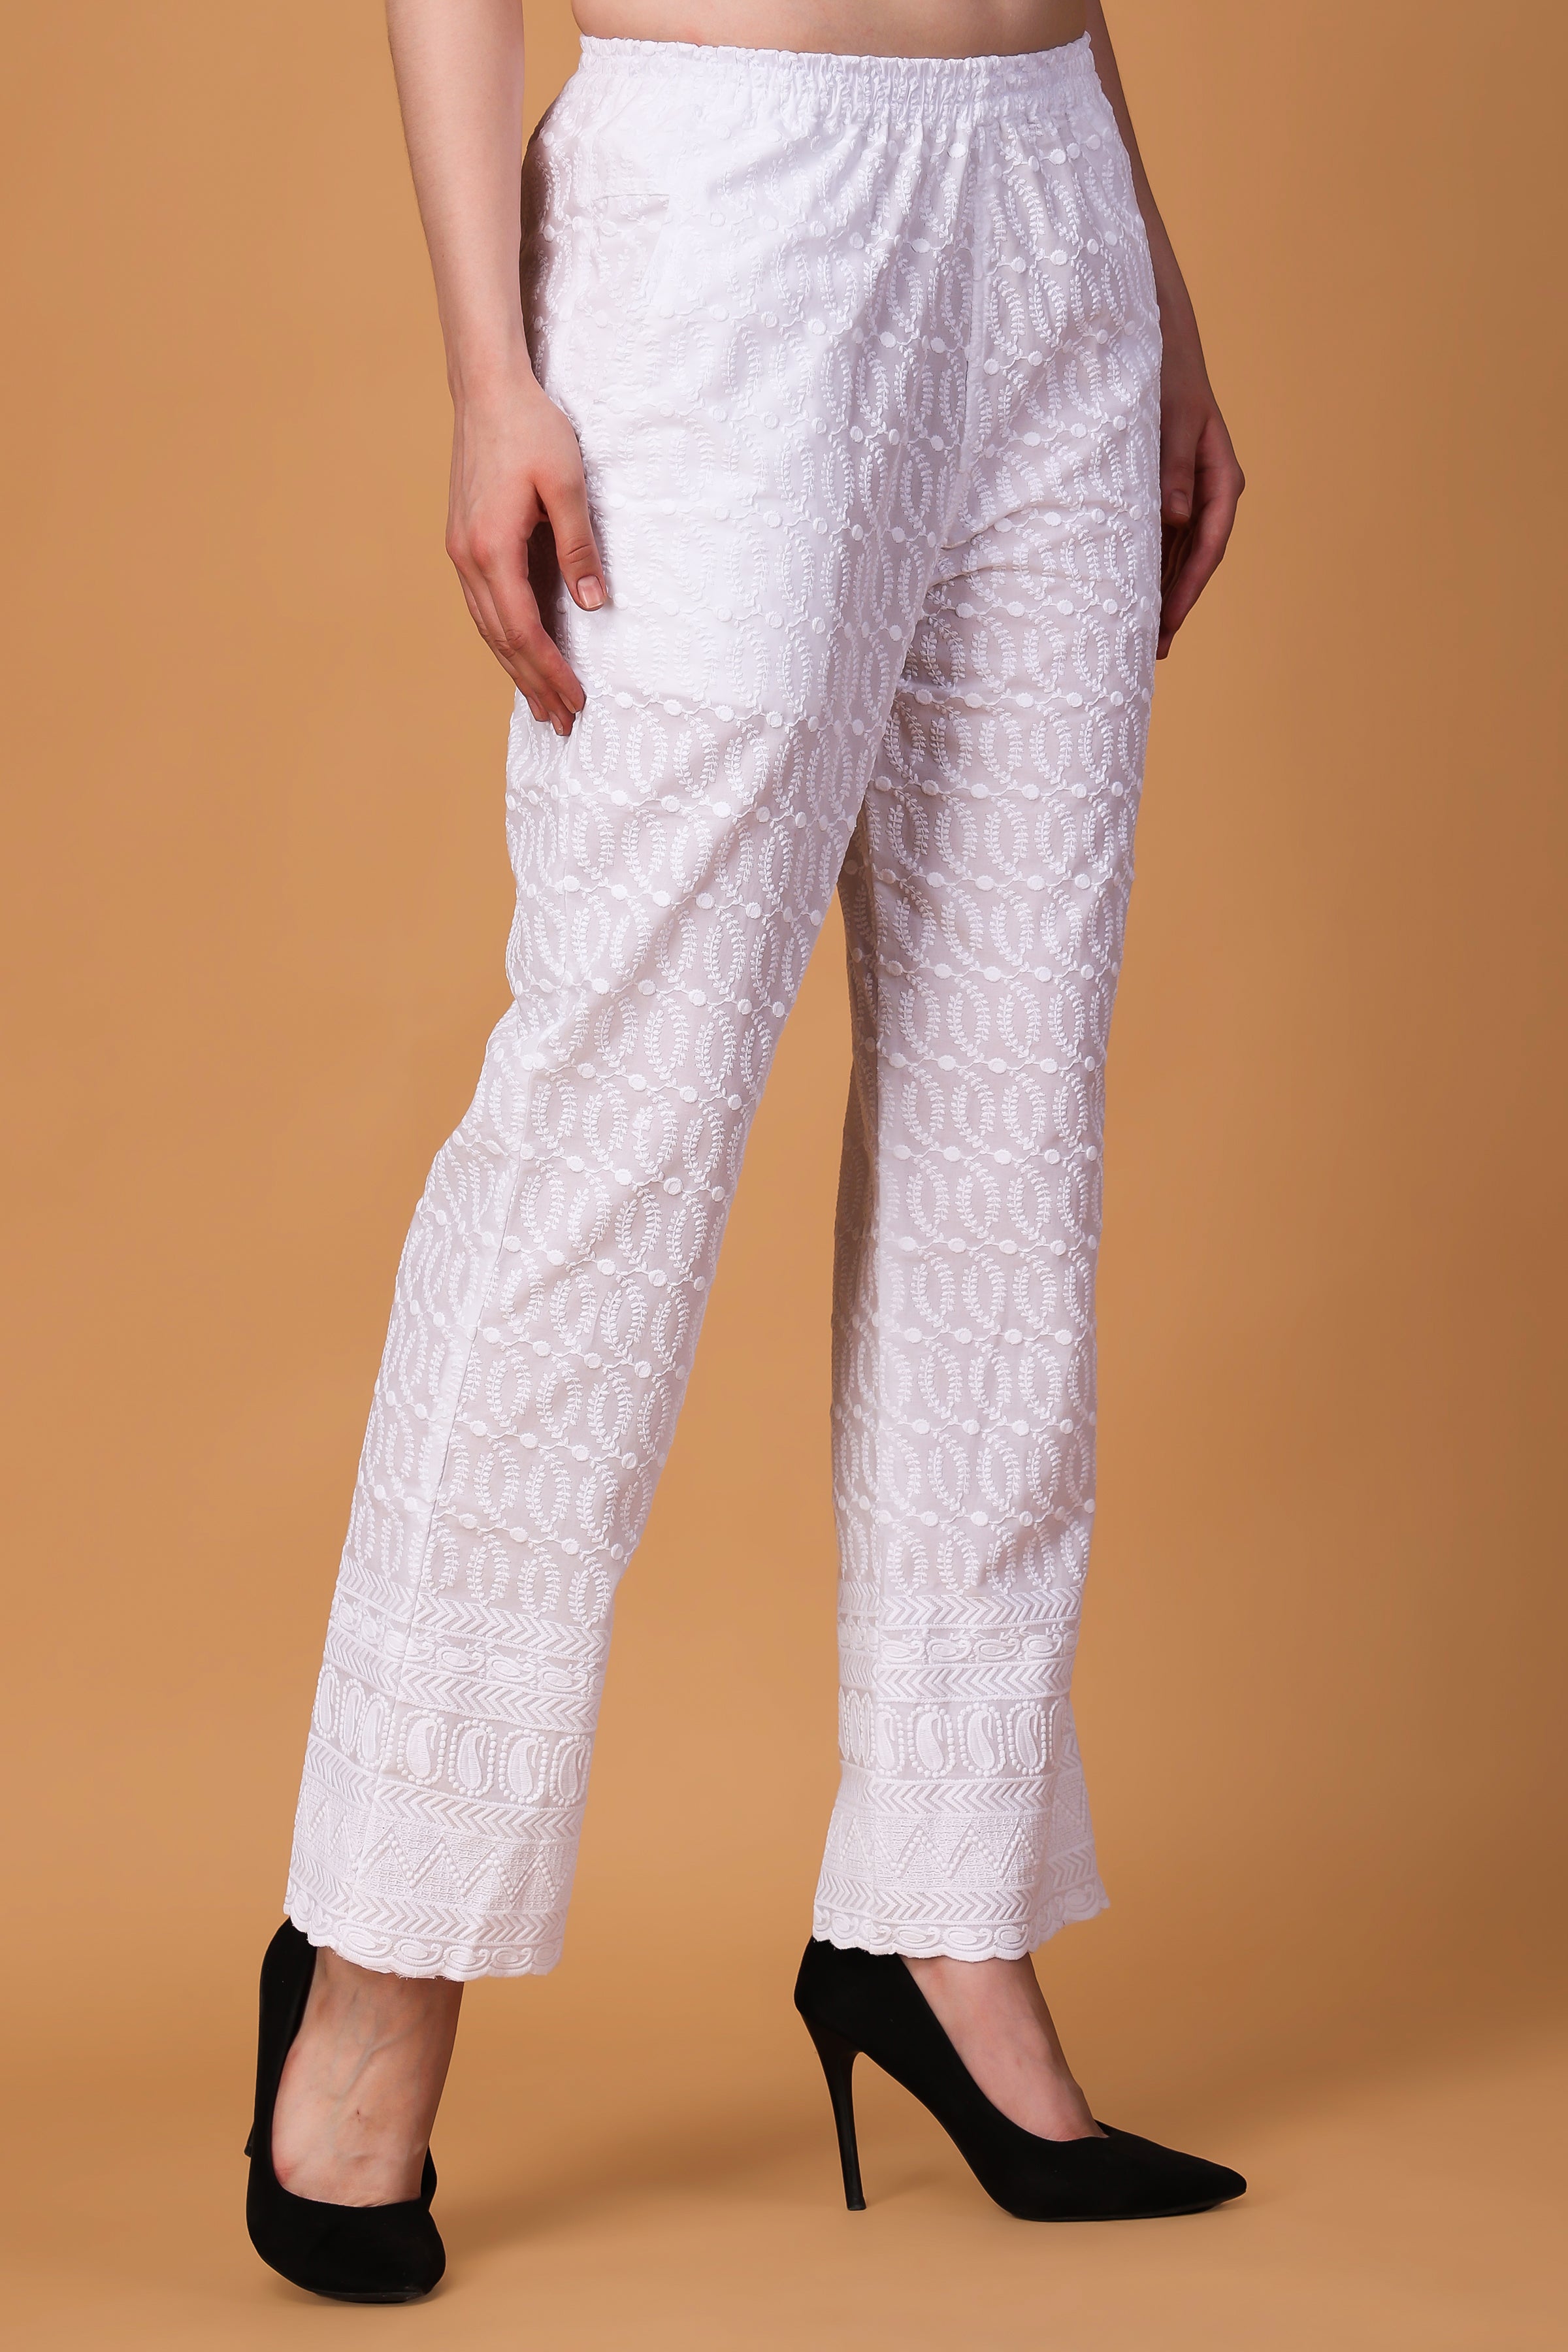 Buy Chikankari Bottom Wear Online | Chikankari Pants For Women